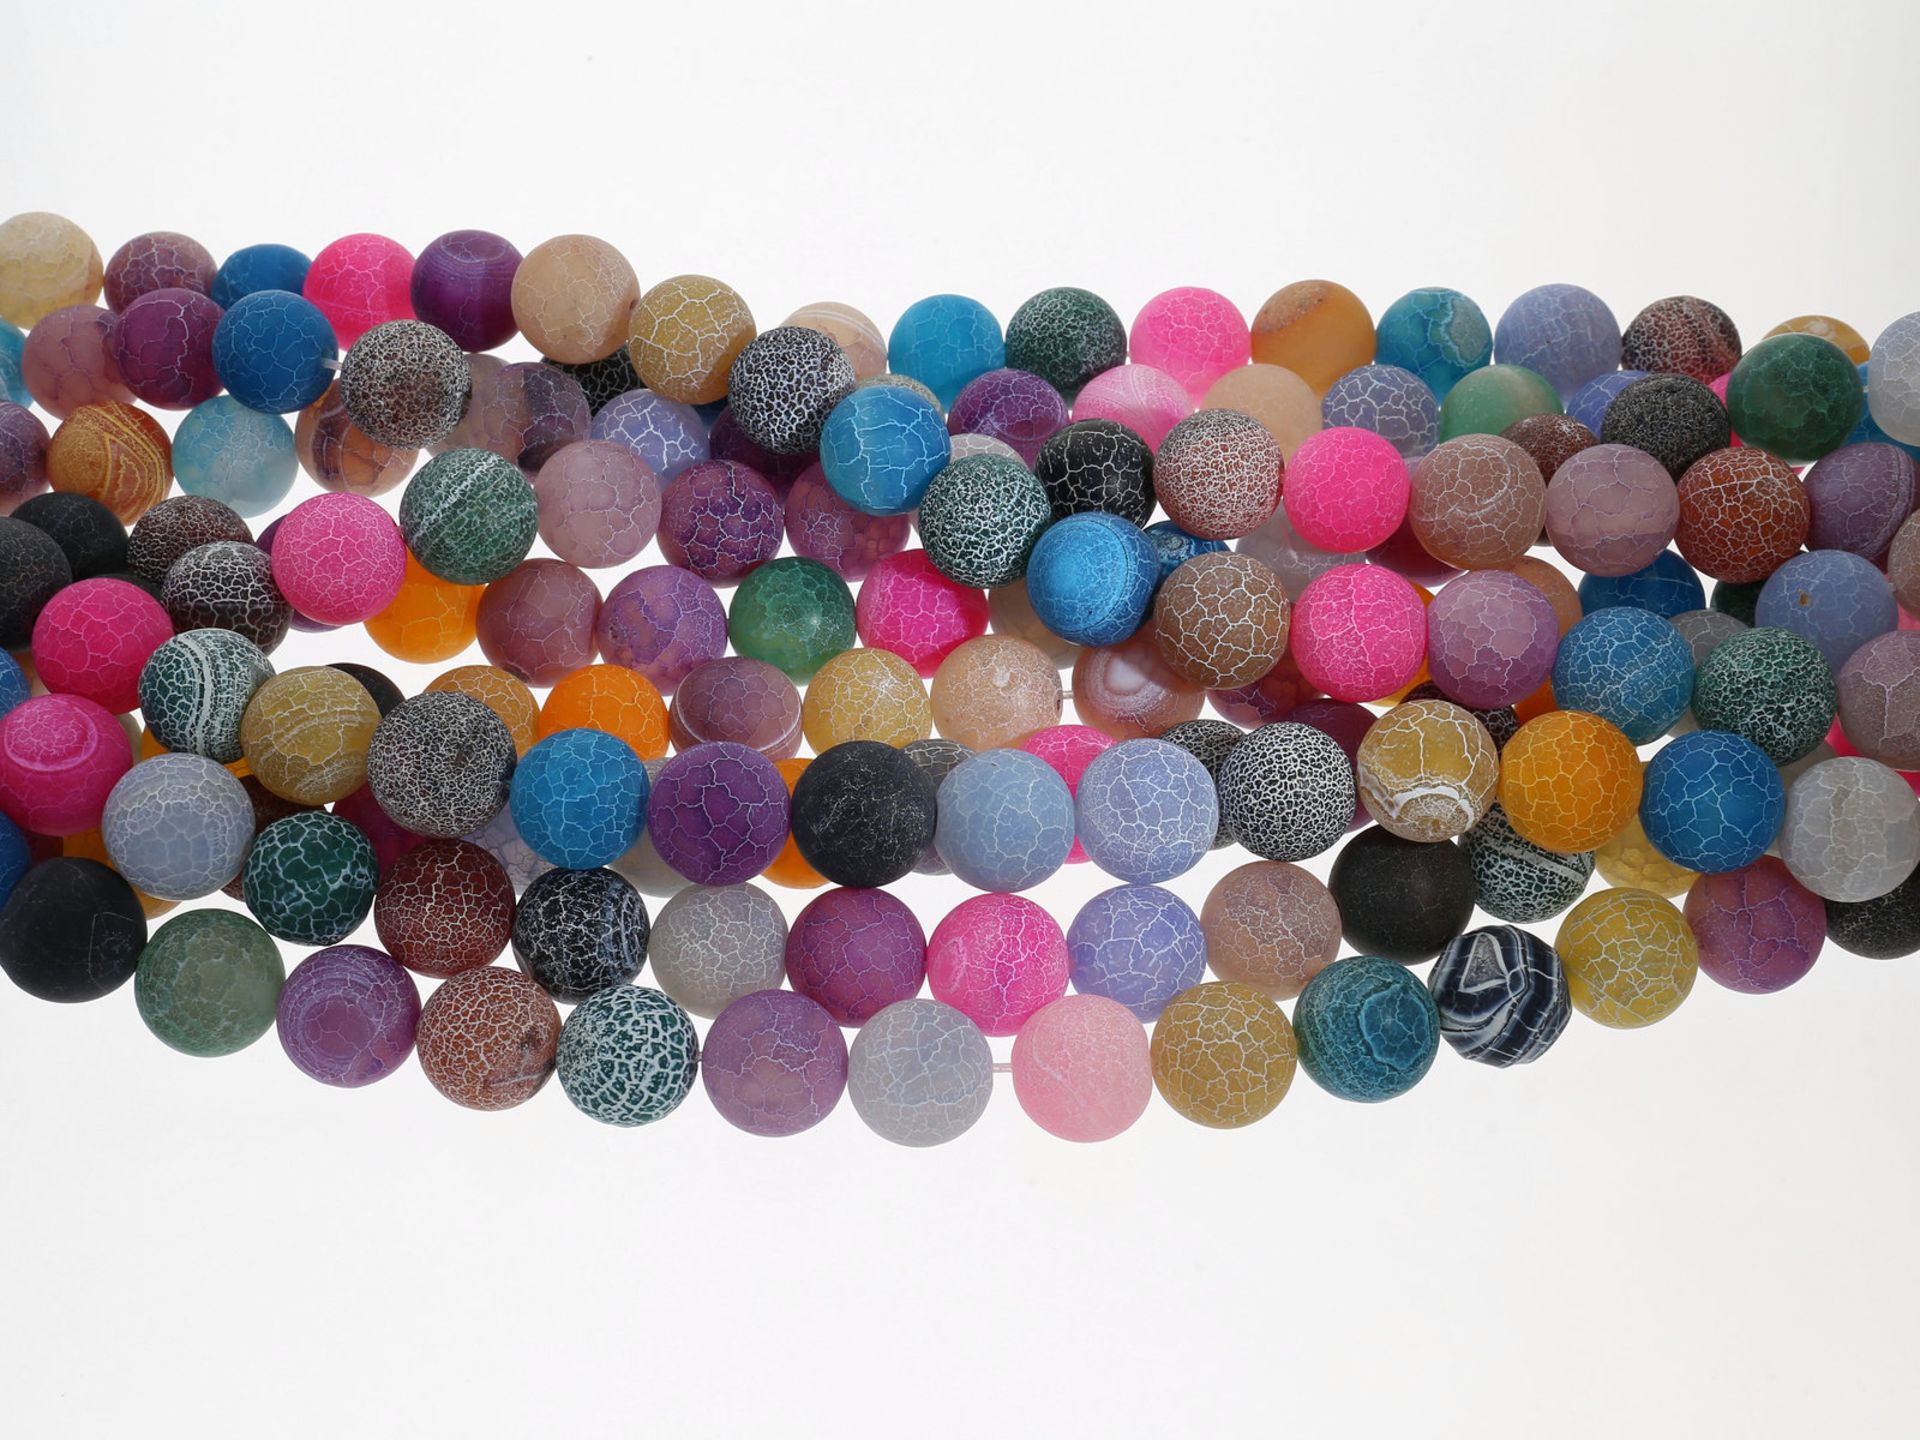 Kette/Collier: interessantes und großes Konvolut neuwertige Ketten mit Steinen und Perlen besetzt, - Bild 2 aus 2